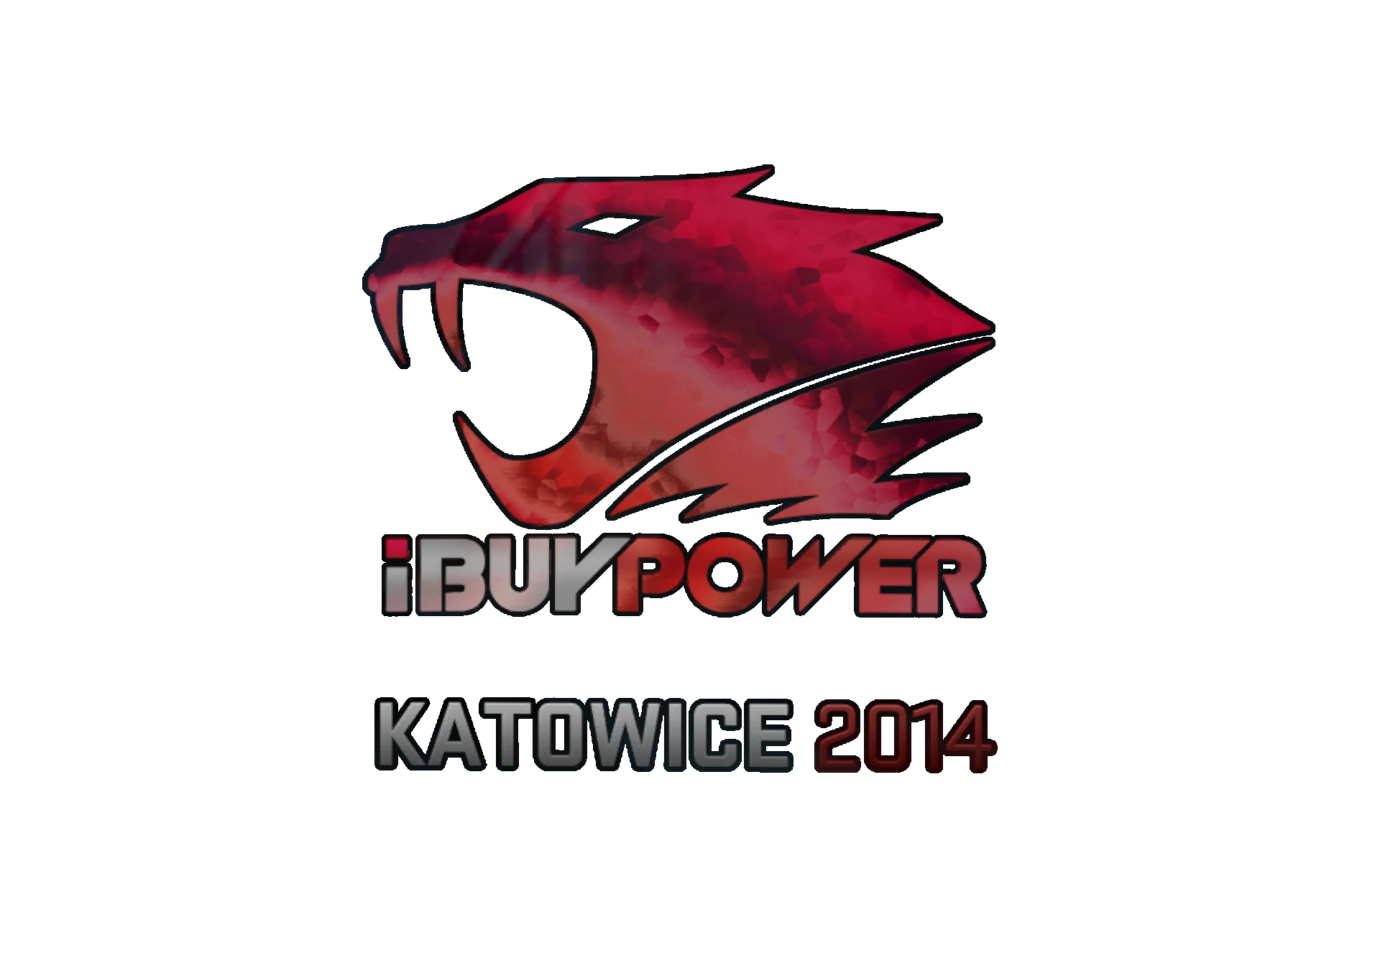 iBUYPOWER (Holo) | Katowice 2014